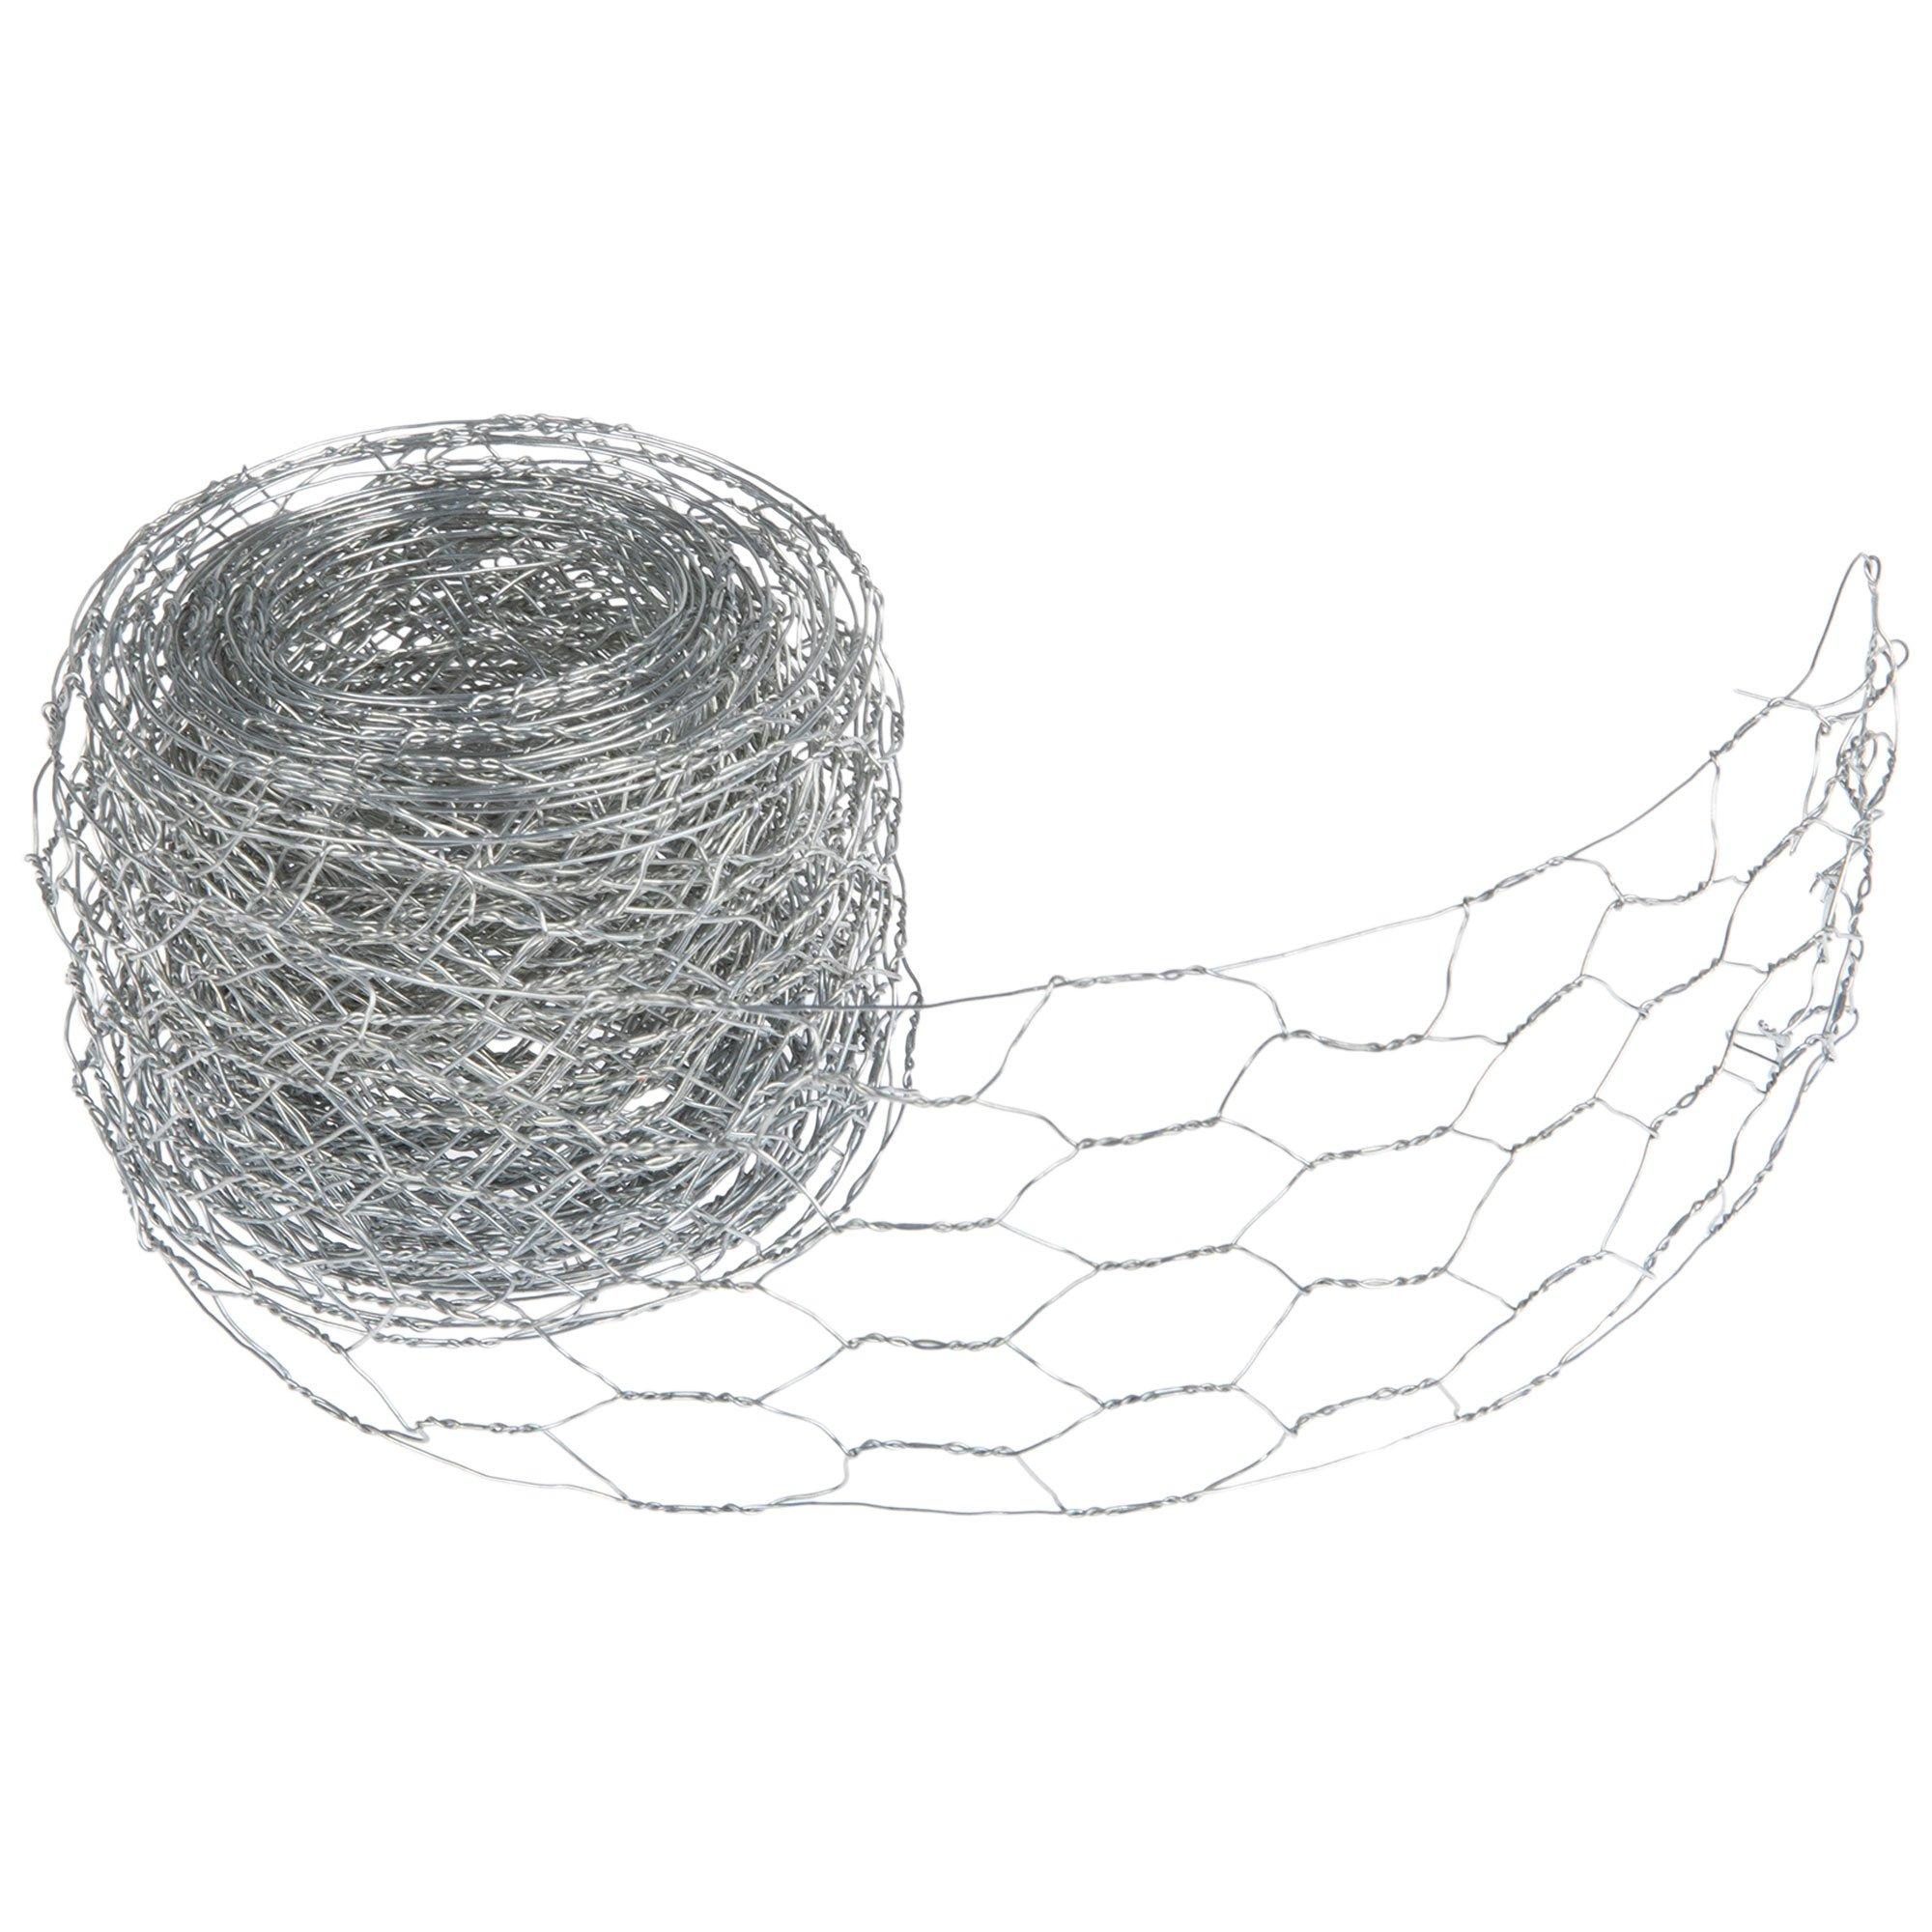 2.5 Chicken Wire Ribbon: Light Beige & White (10 Yards